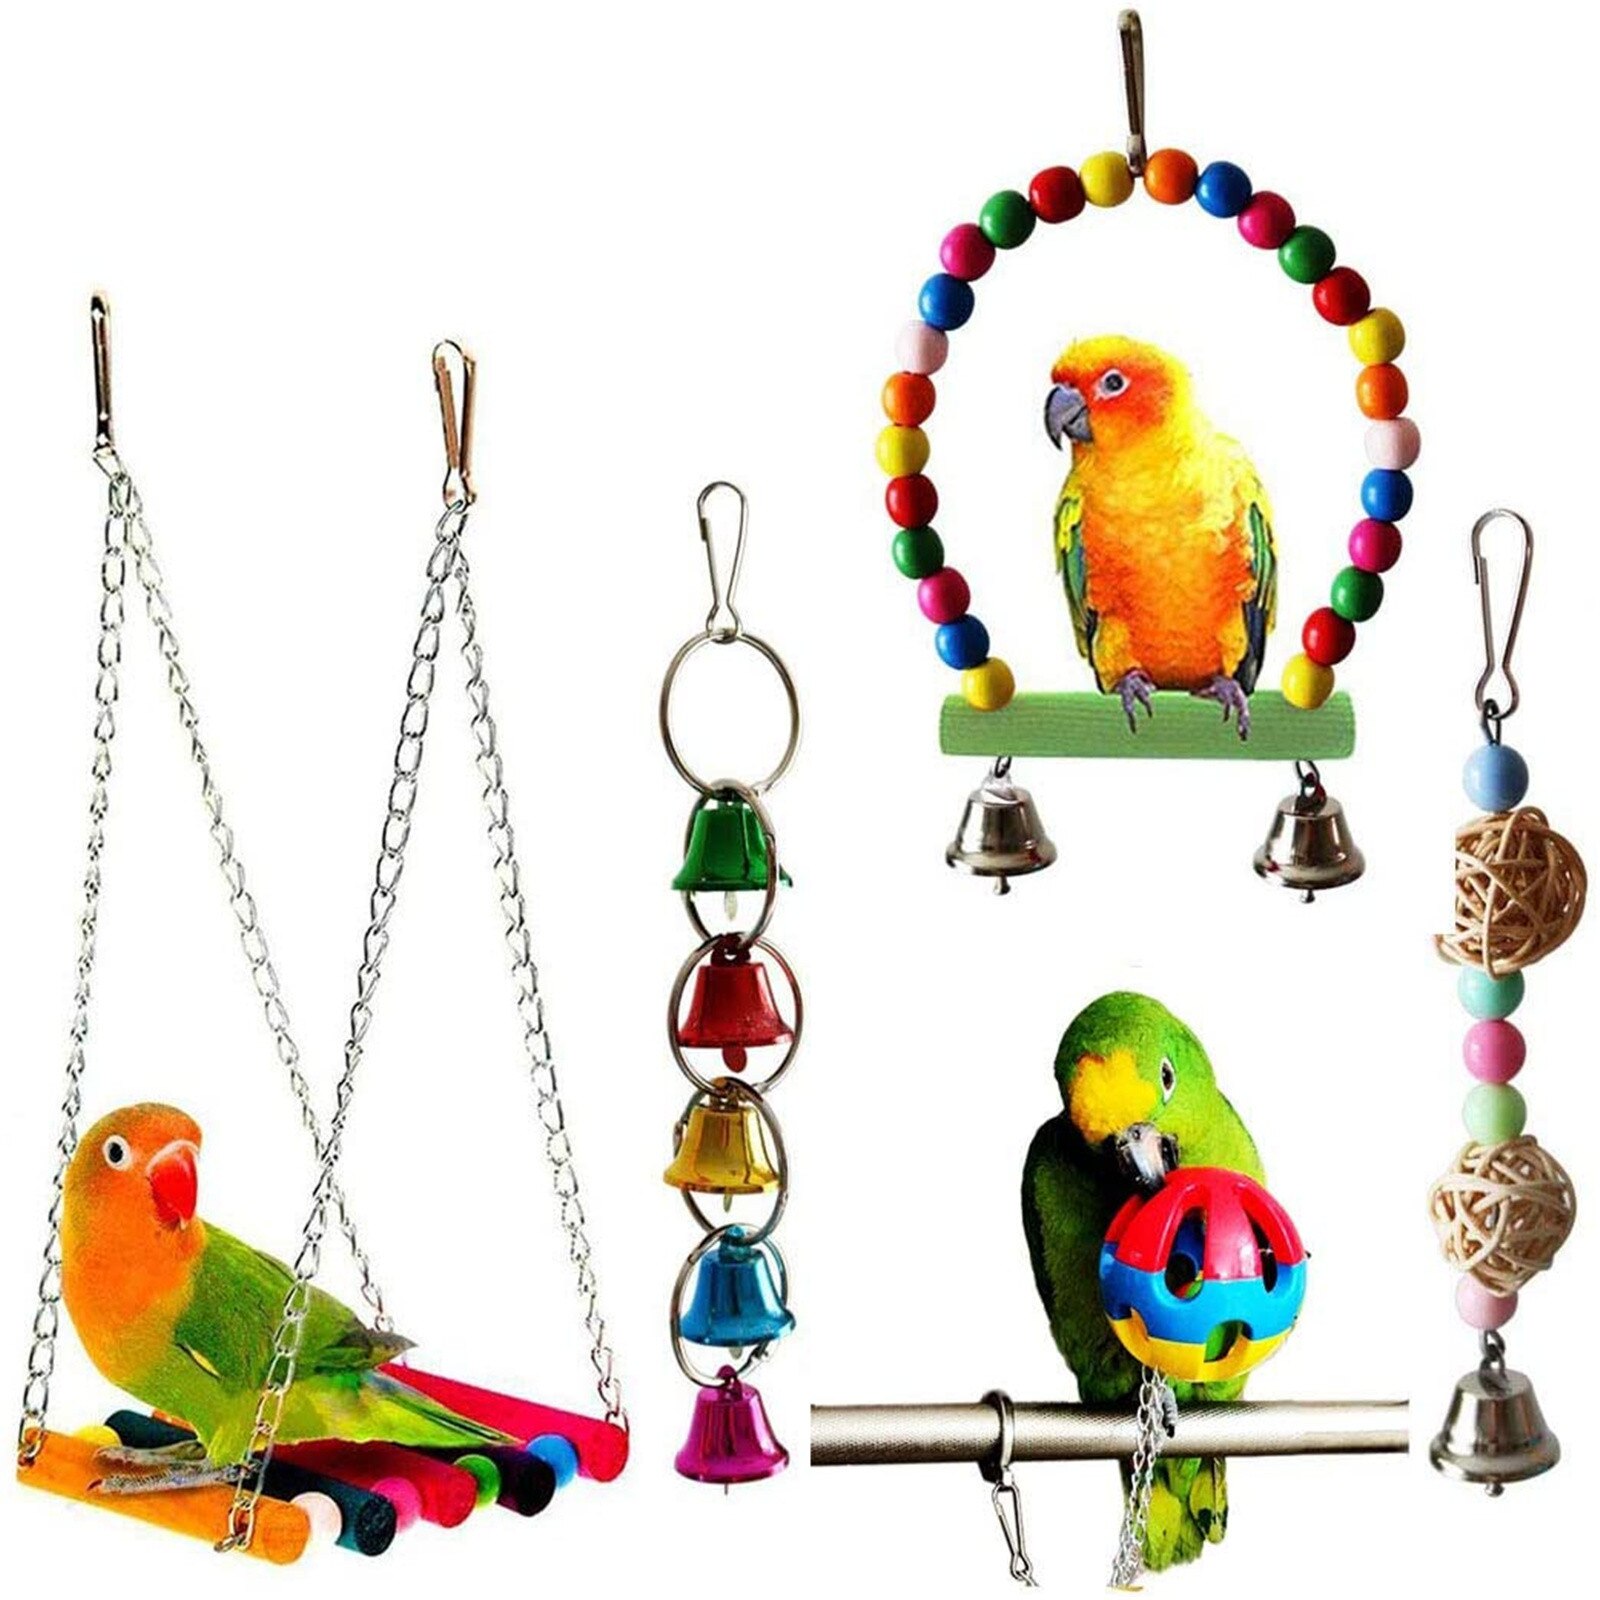 Papegaaien Speelgoed En Vogel Accessoires Voor Huisdier Speelgoed Swing Stand Budgie Parkiet Kooi Afrikaanse Grey Vogel Speelgoed Parkiet Kooi # t2g